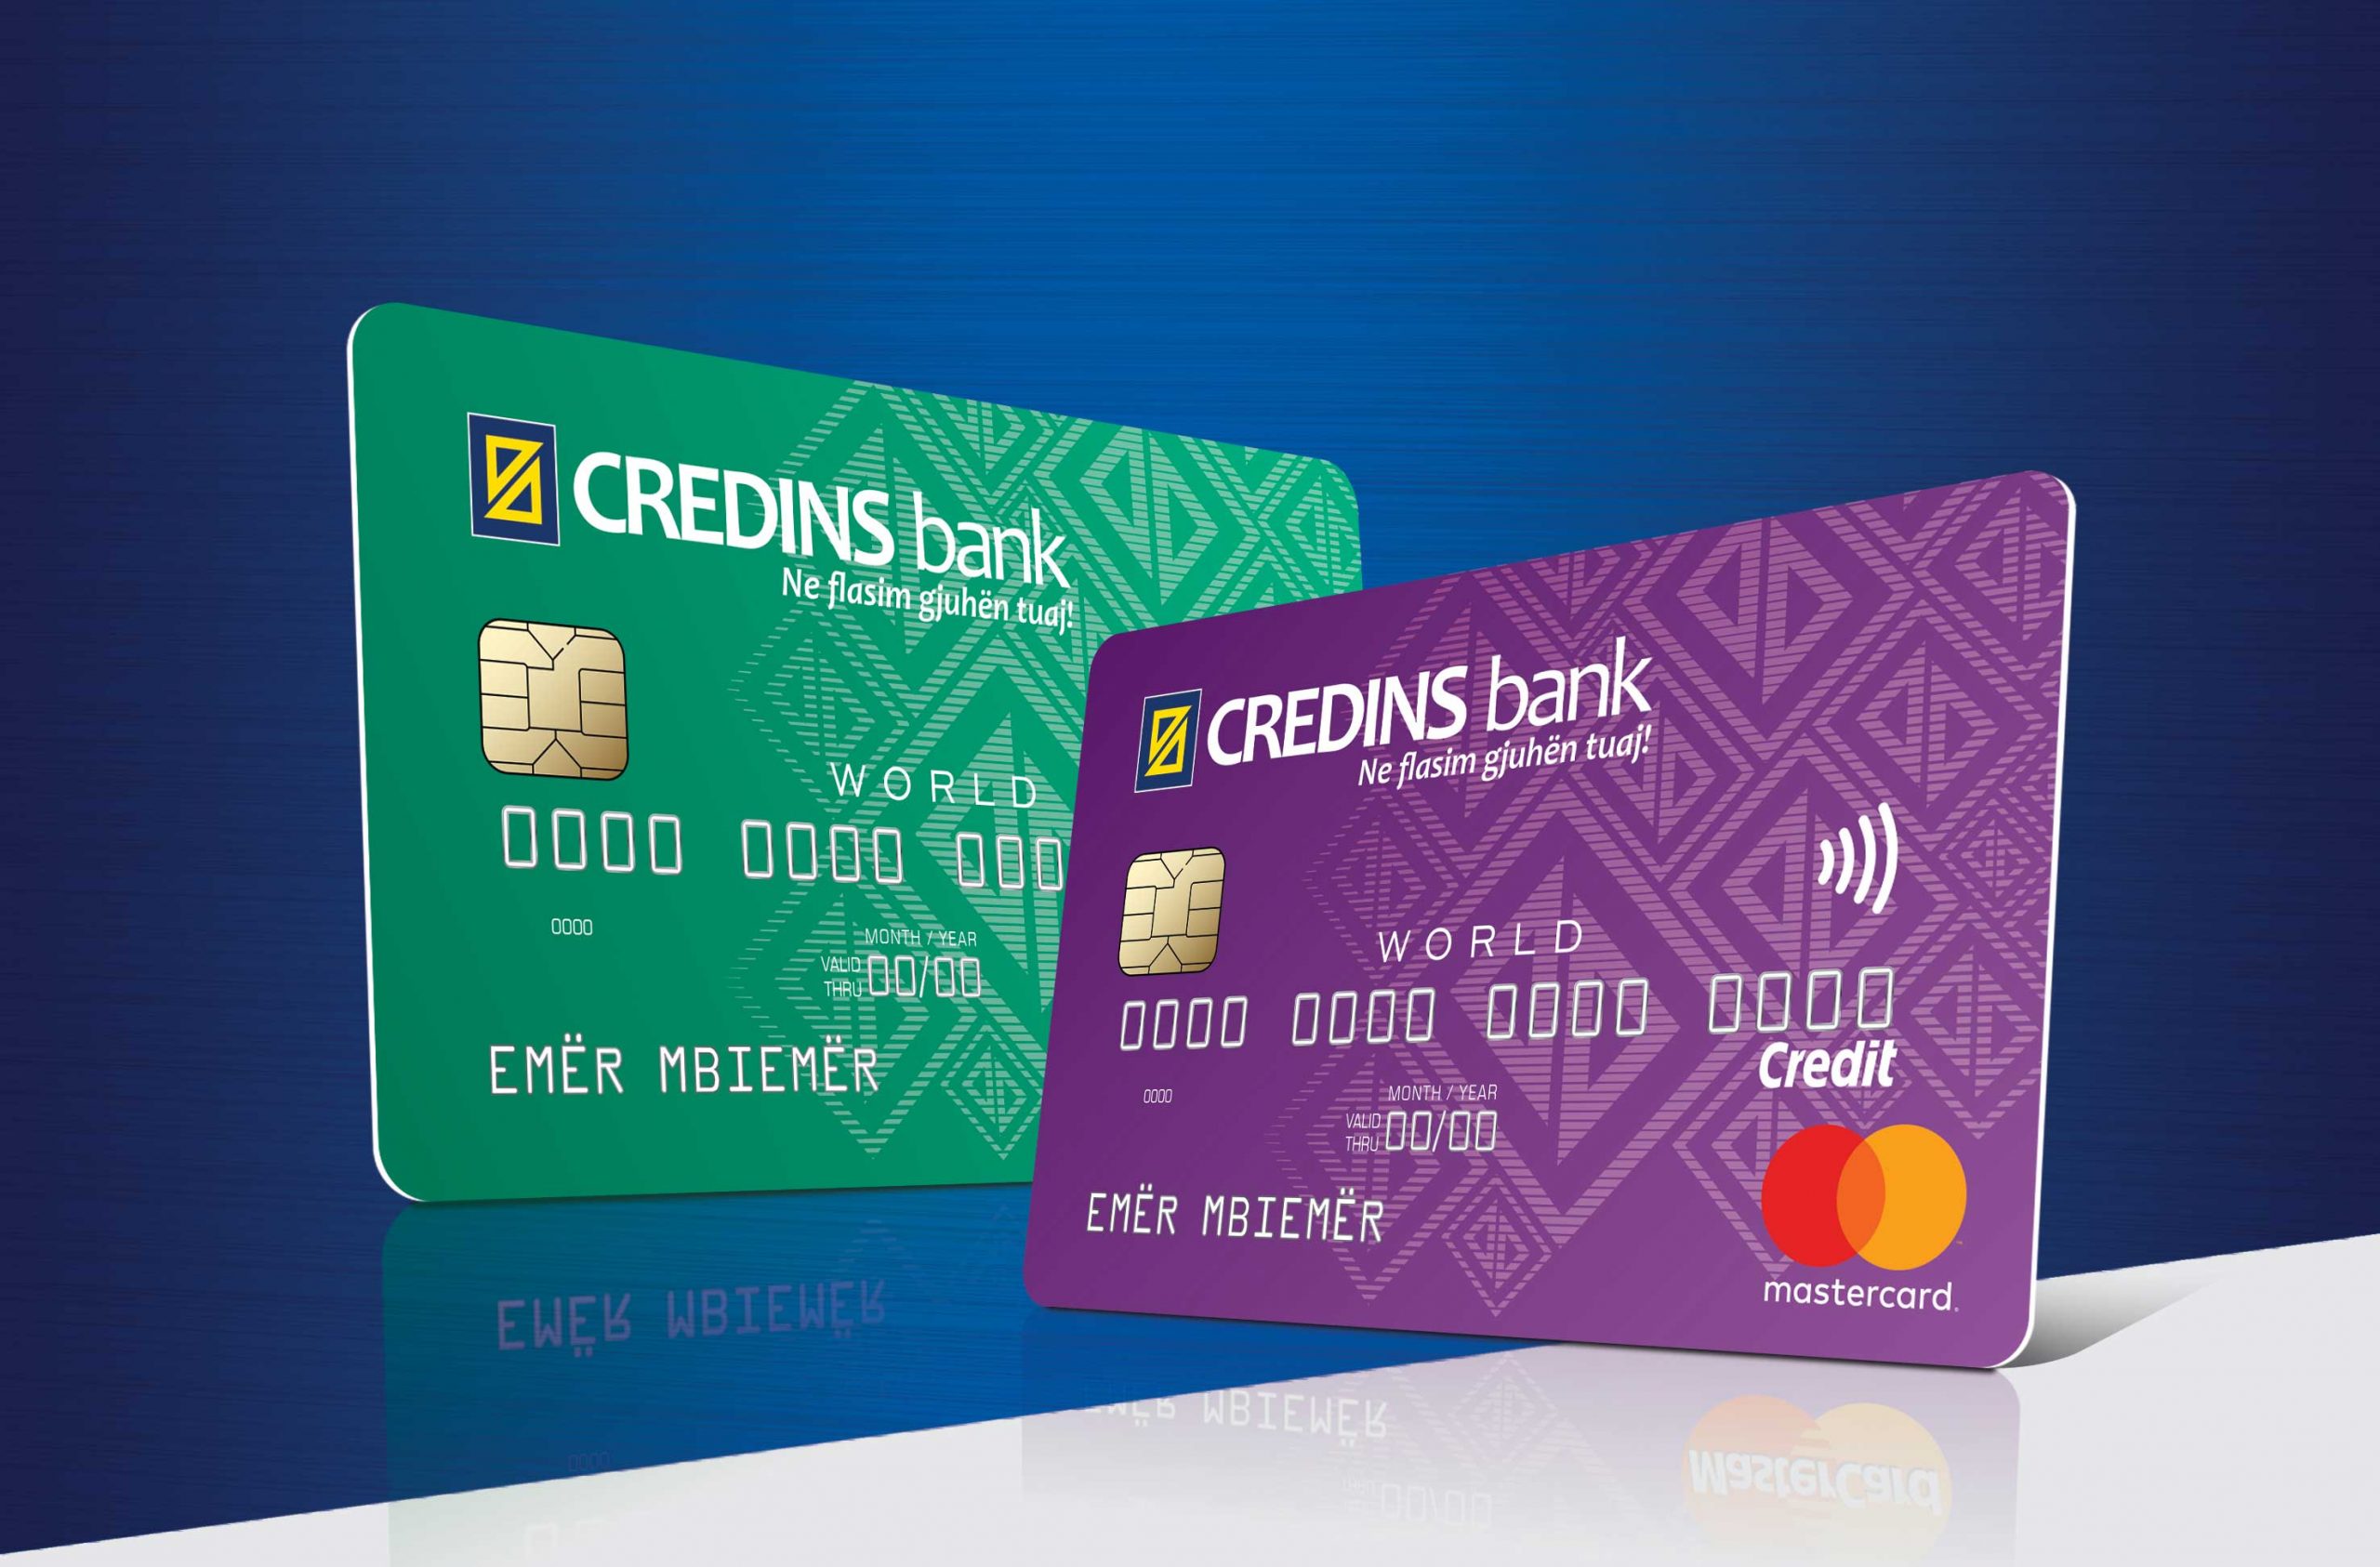 Credins Bank Mastercard